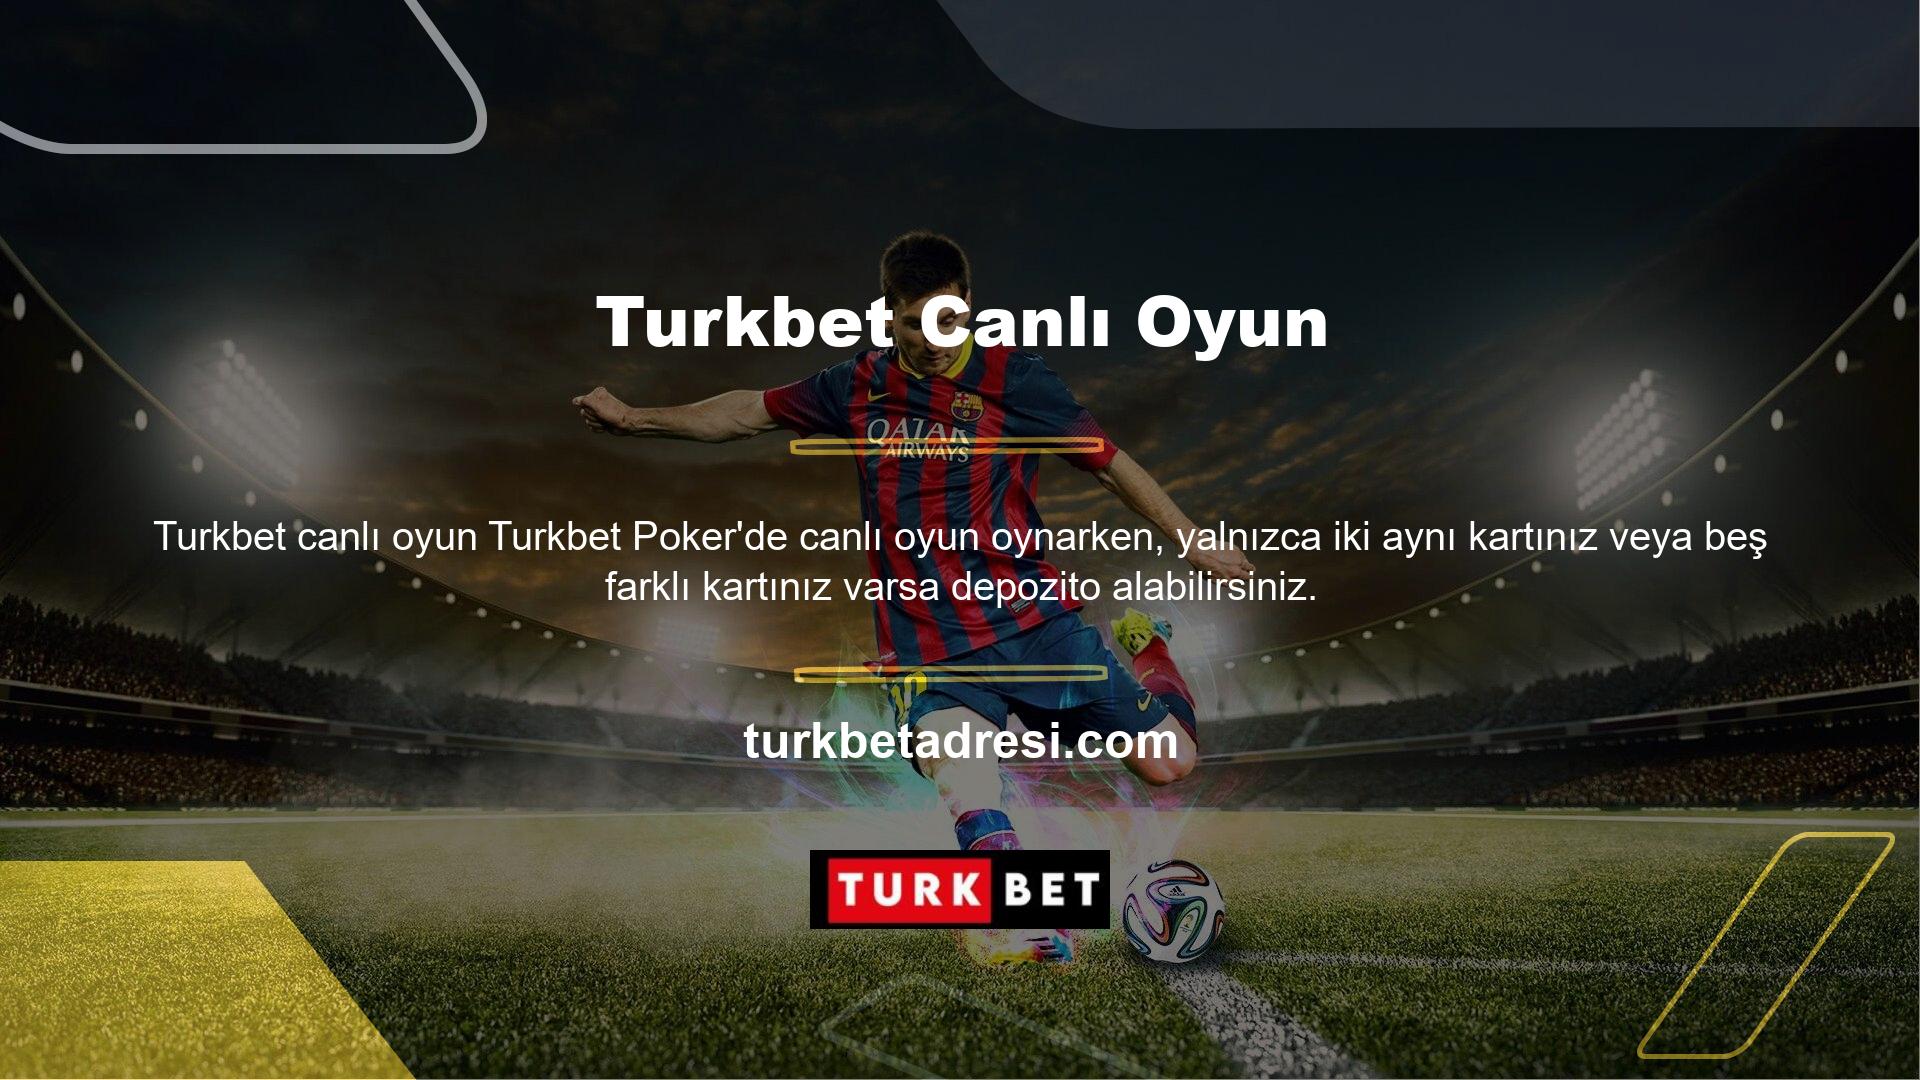 Turkbet web sitesi, bu son derece kazançlı oyunu eğlenceli ve karlı bir şekilde denemenize olanak tanır